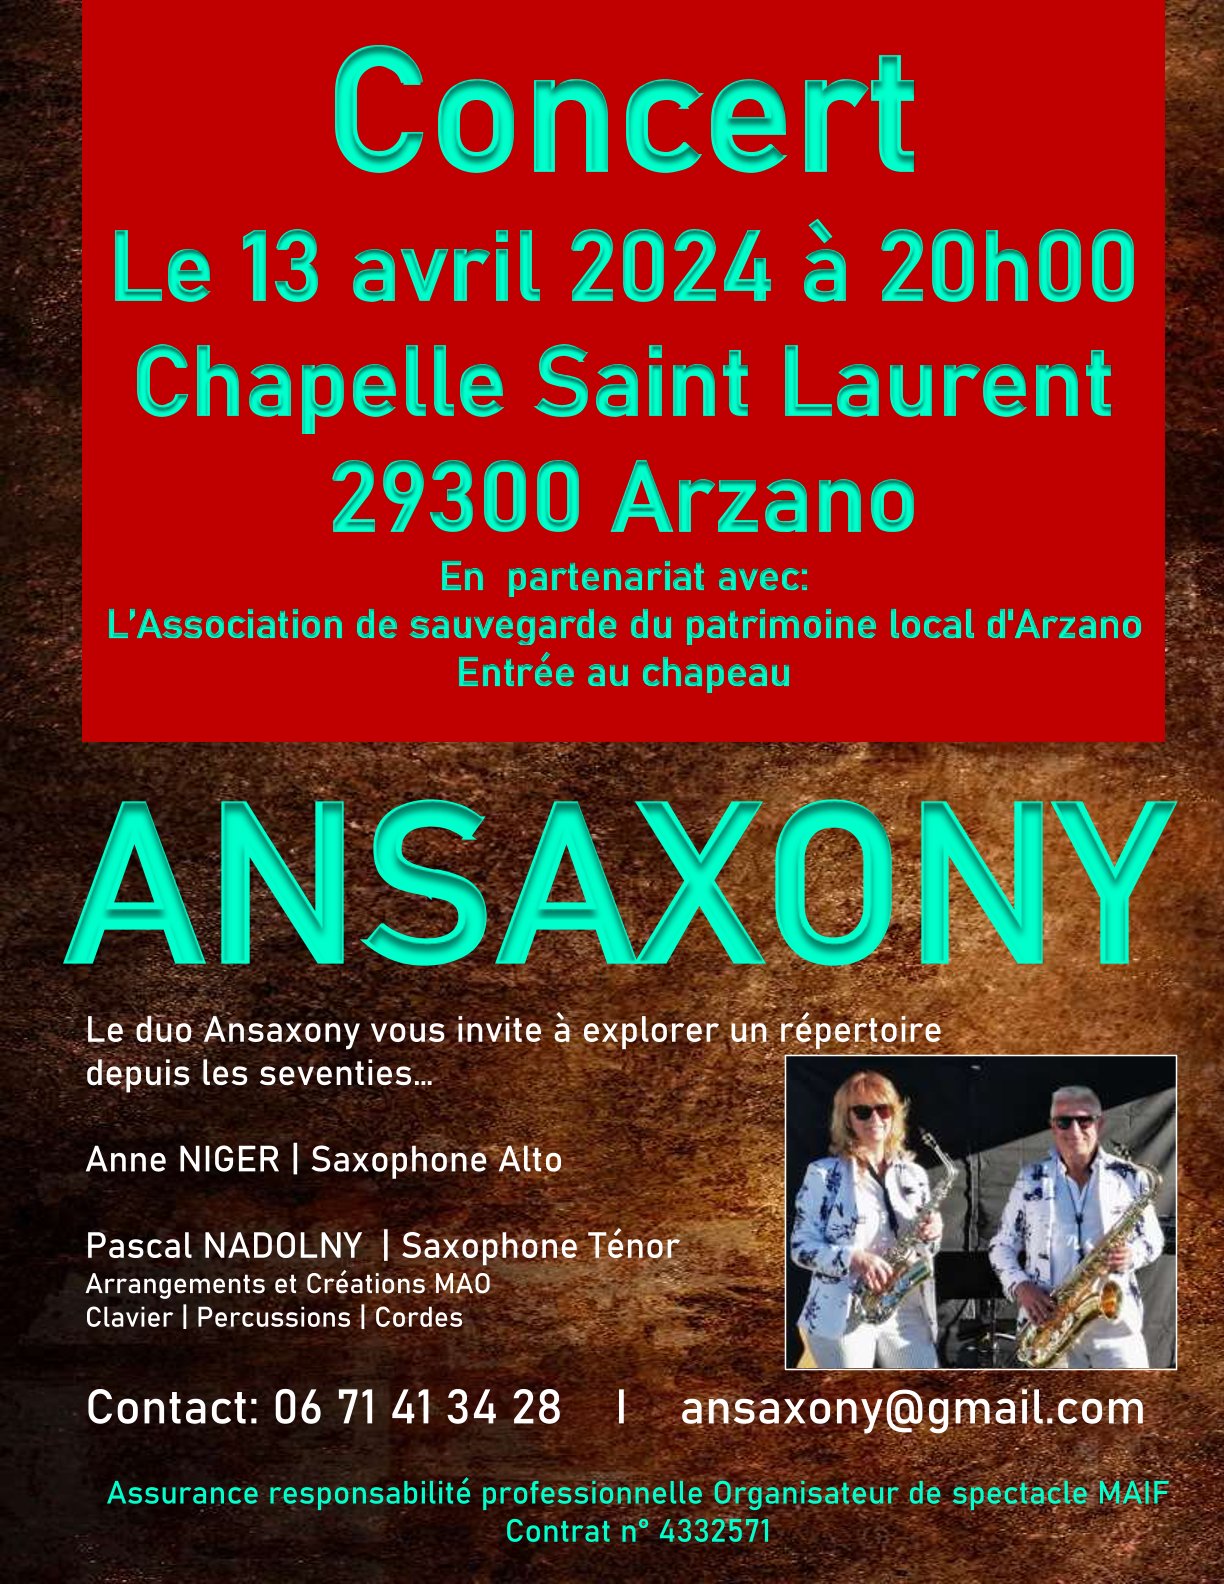 Concert Ansaxony